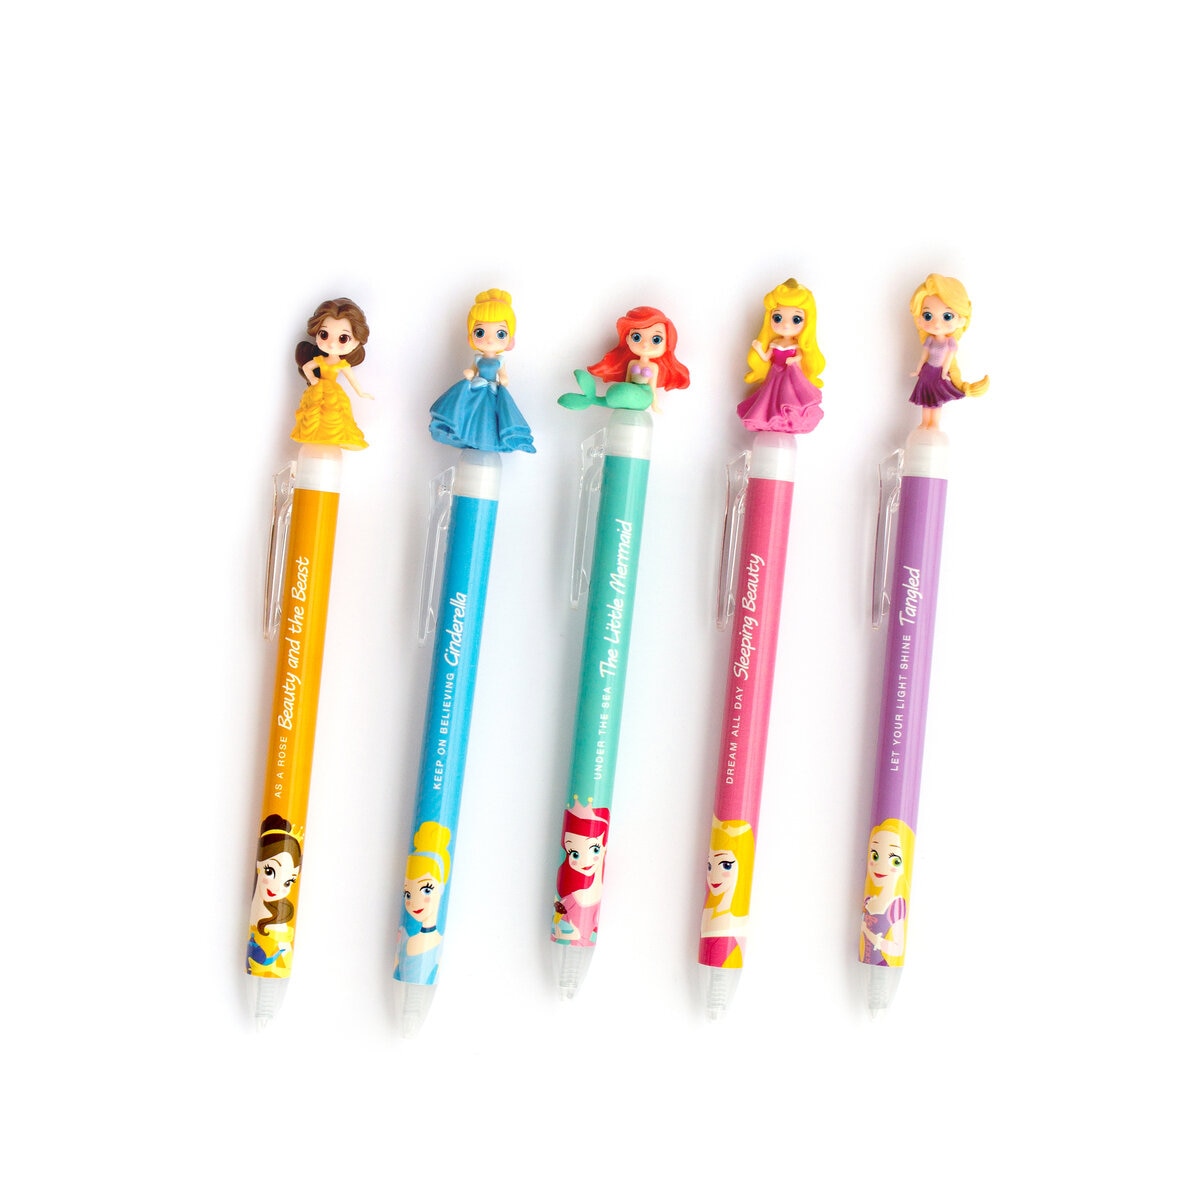 ディズニー ノック式ゲルボールペン 10本セット | Costco Japan